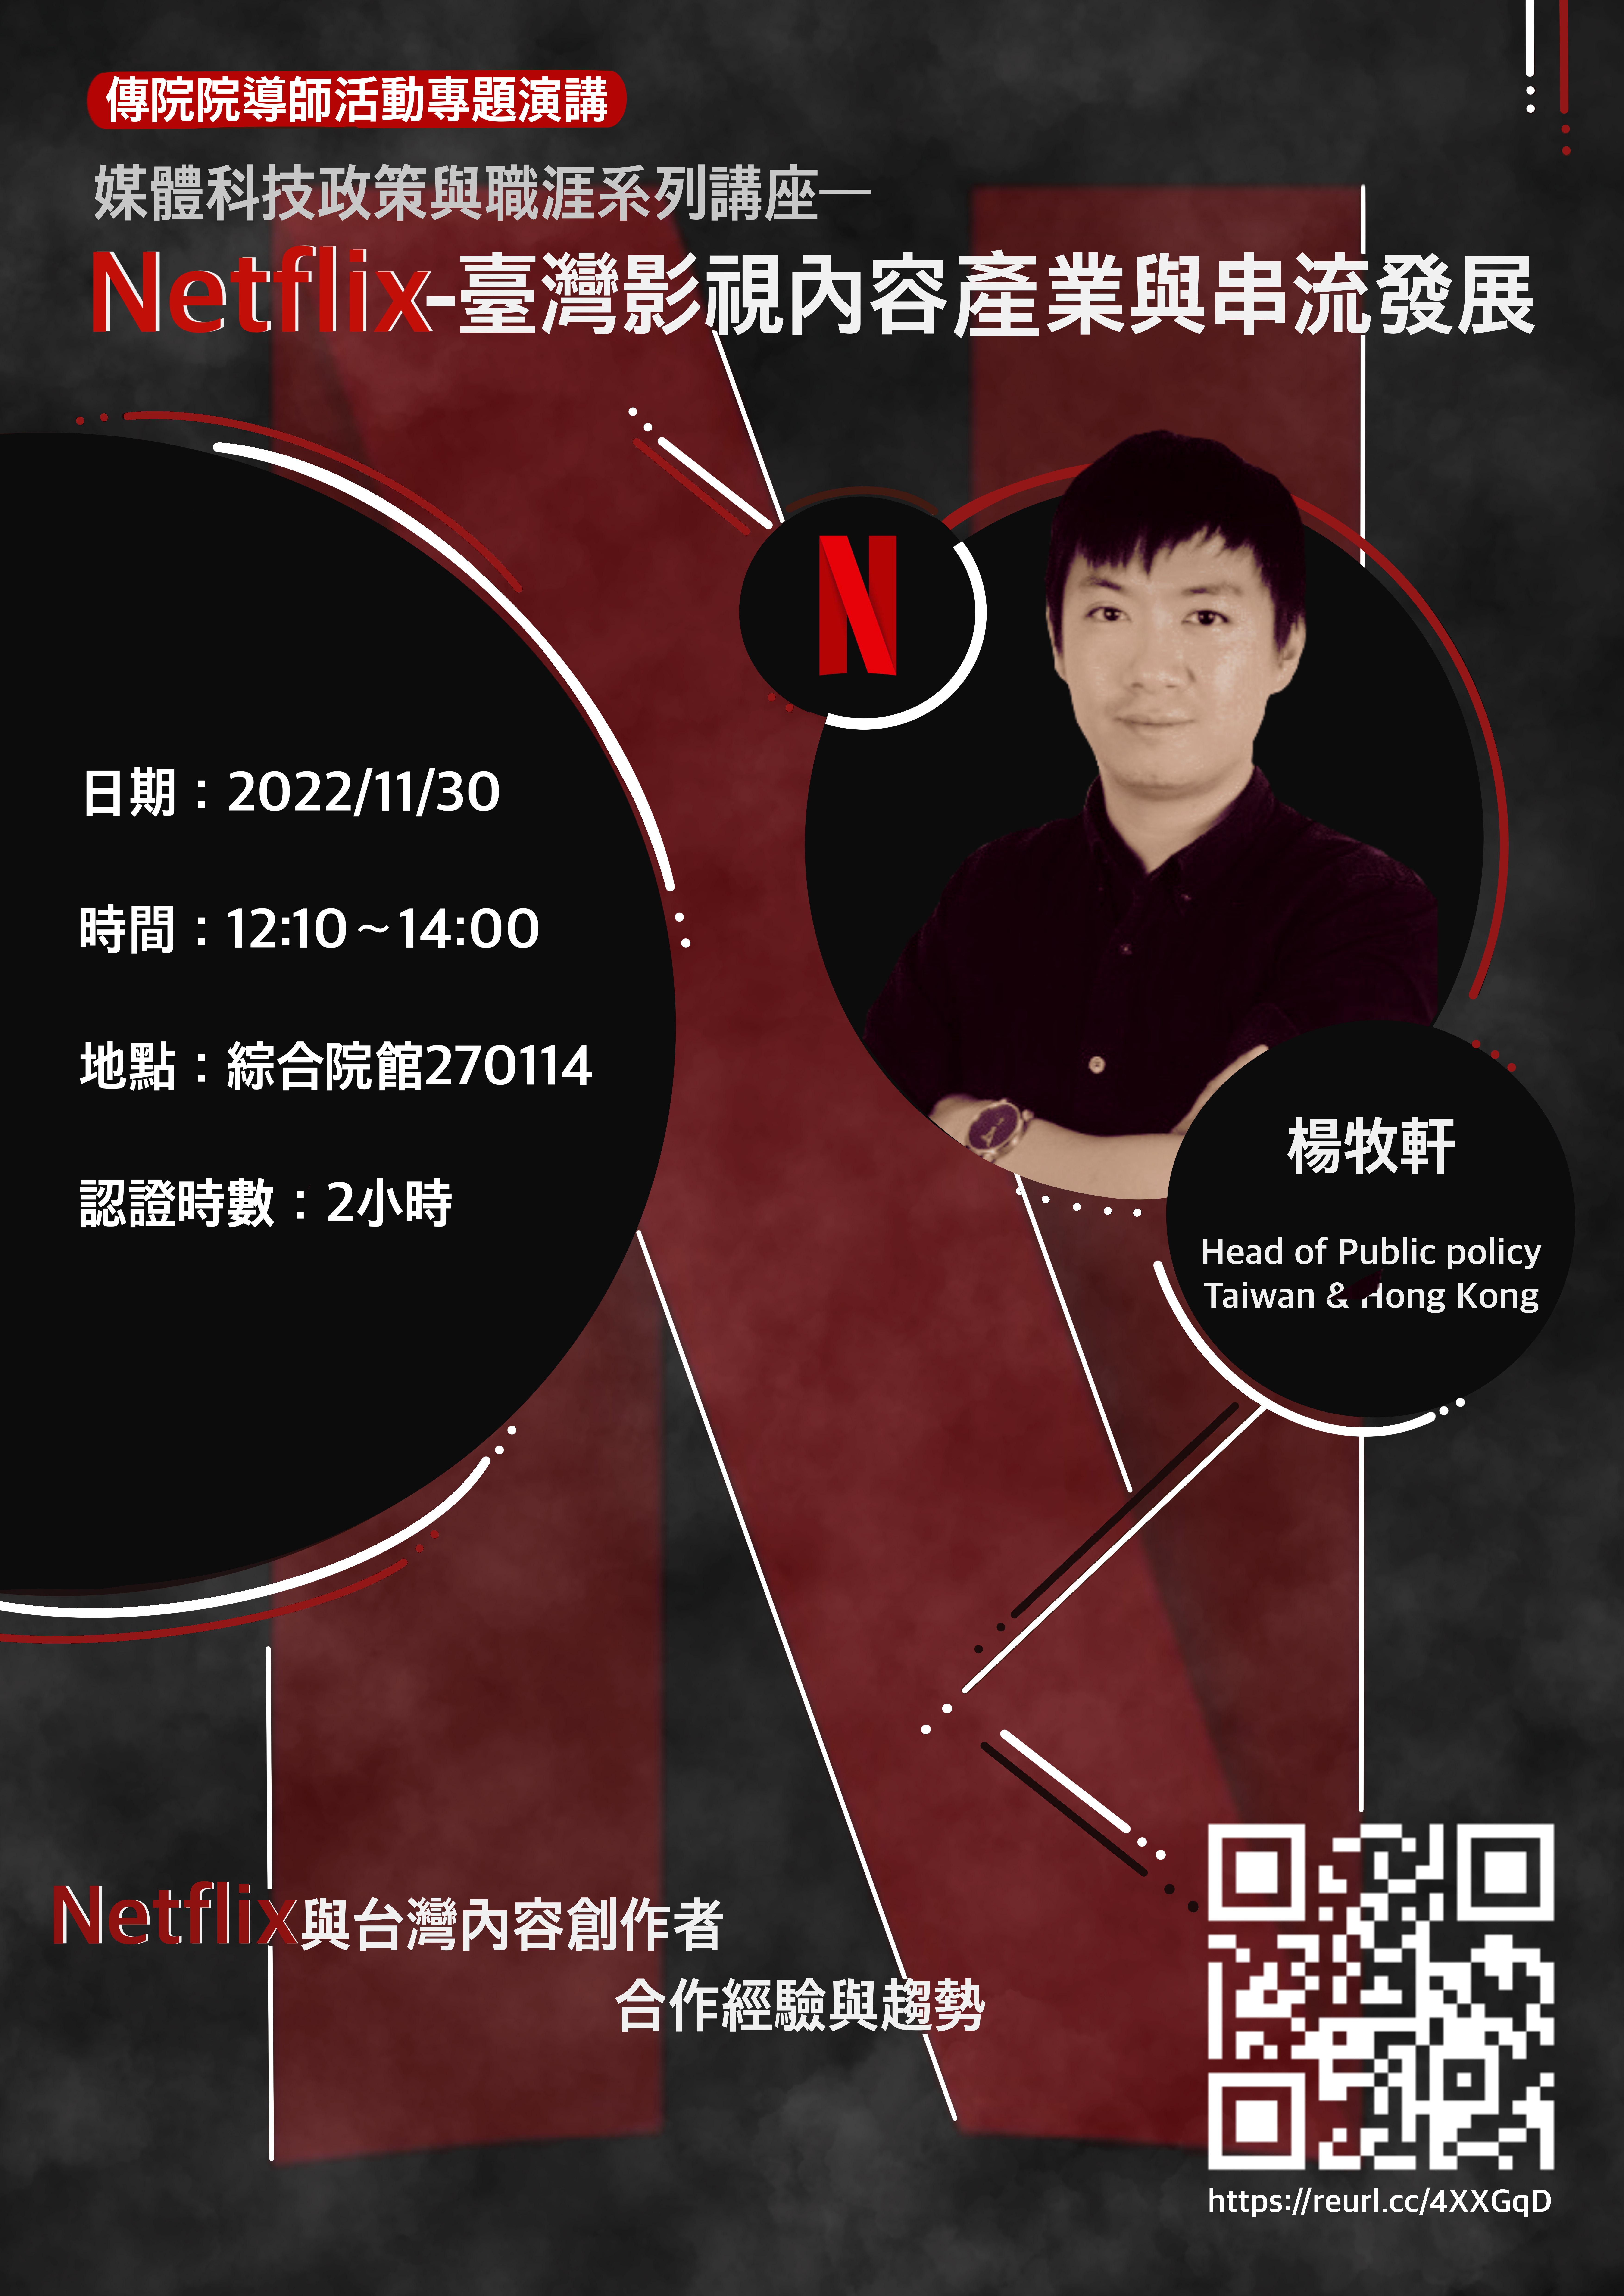 傳院院導師活動專題演講-Netflix - 臺灣影視內容產業與串流發展